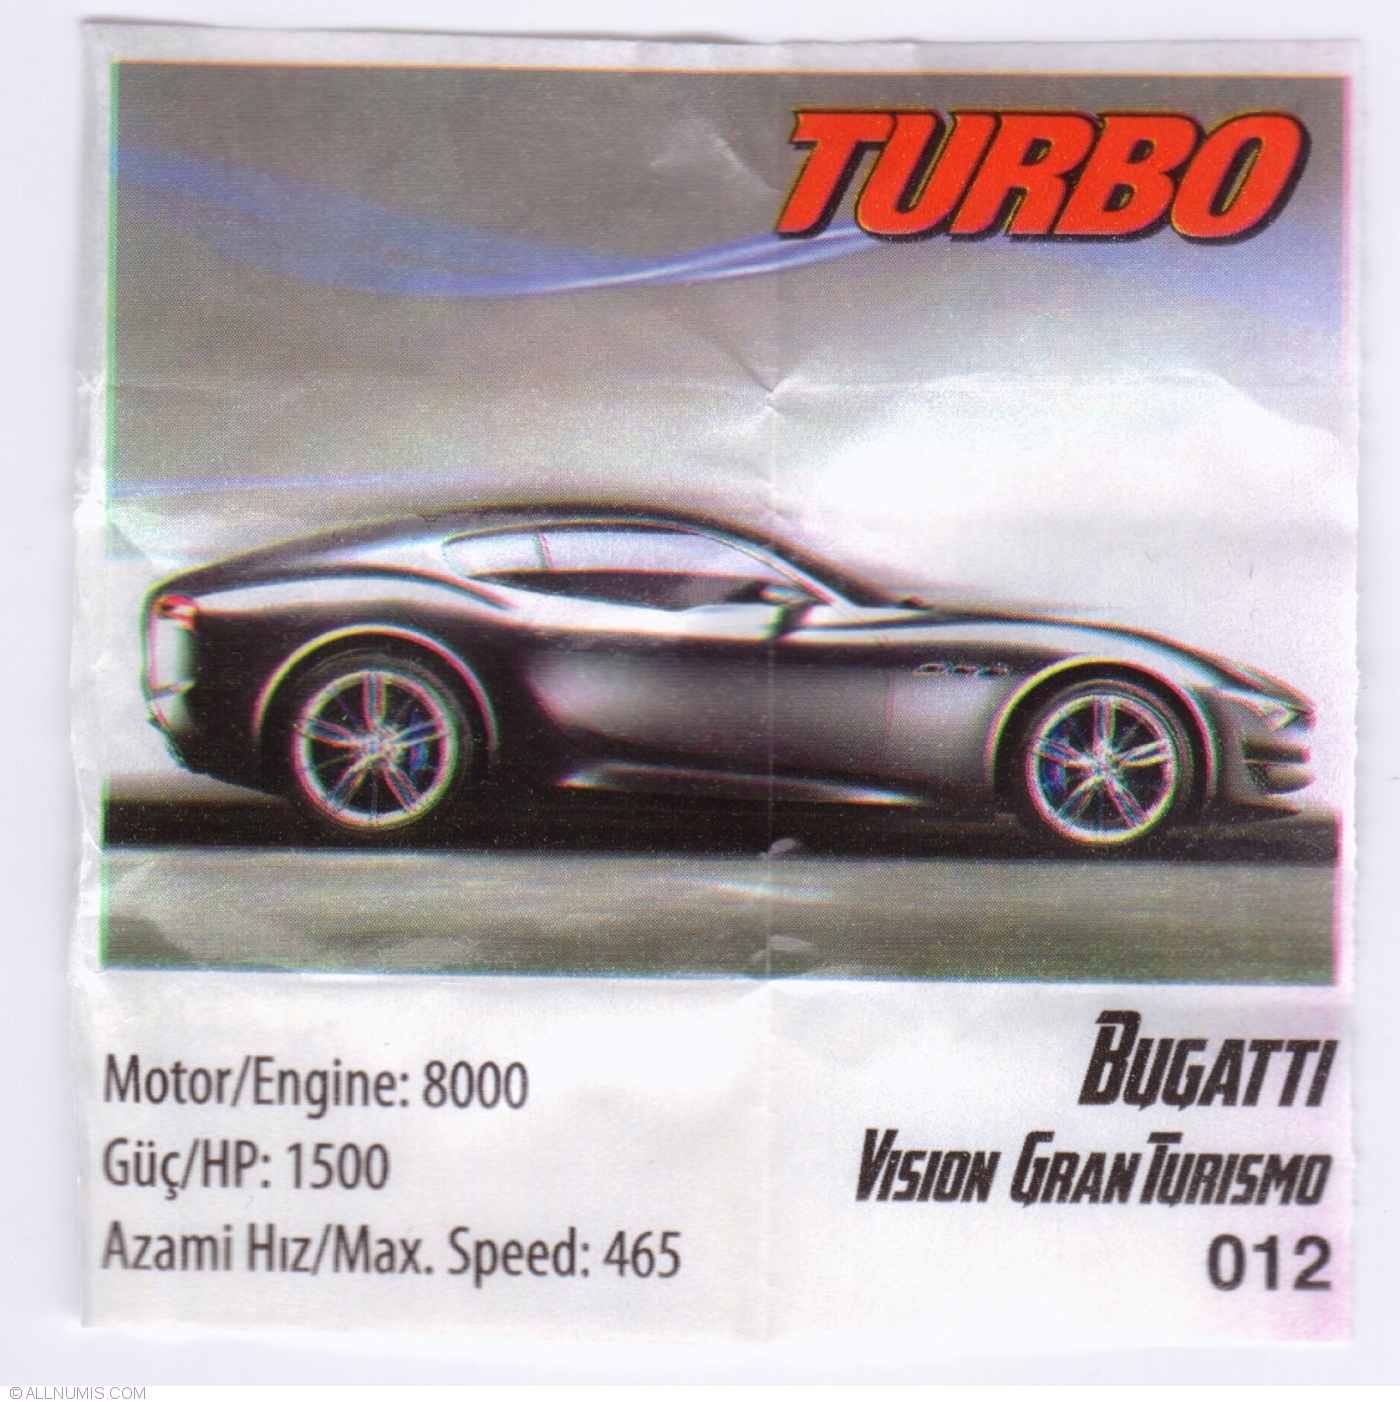 012 - Bugatti Vision Chewing (2017) TURBO Gran 1-160 XTREME - - Turbo - Insert 40257 Gum Turismo